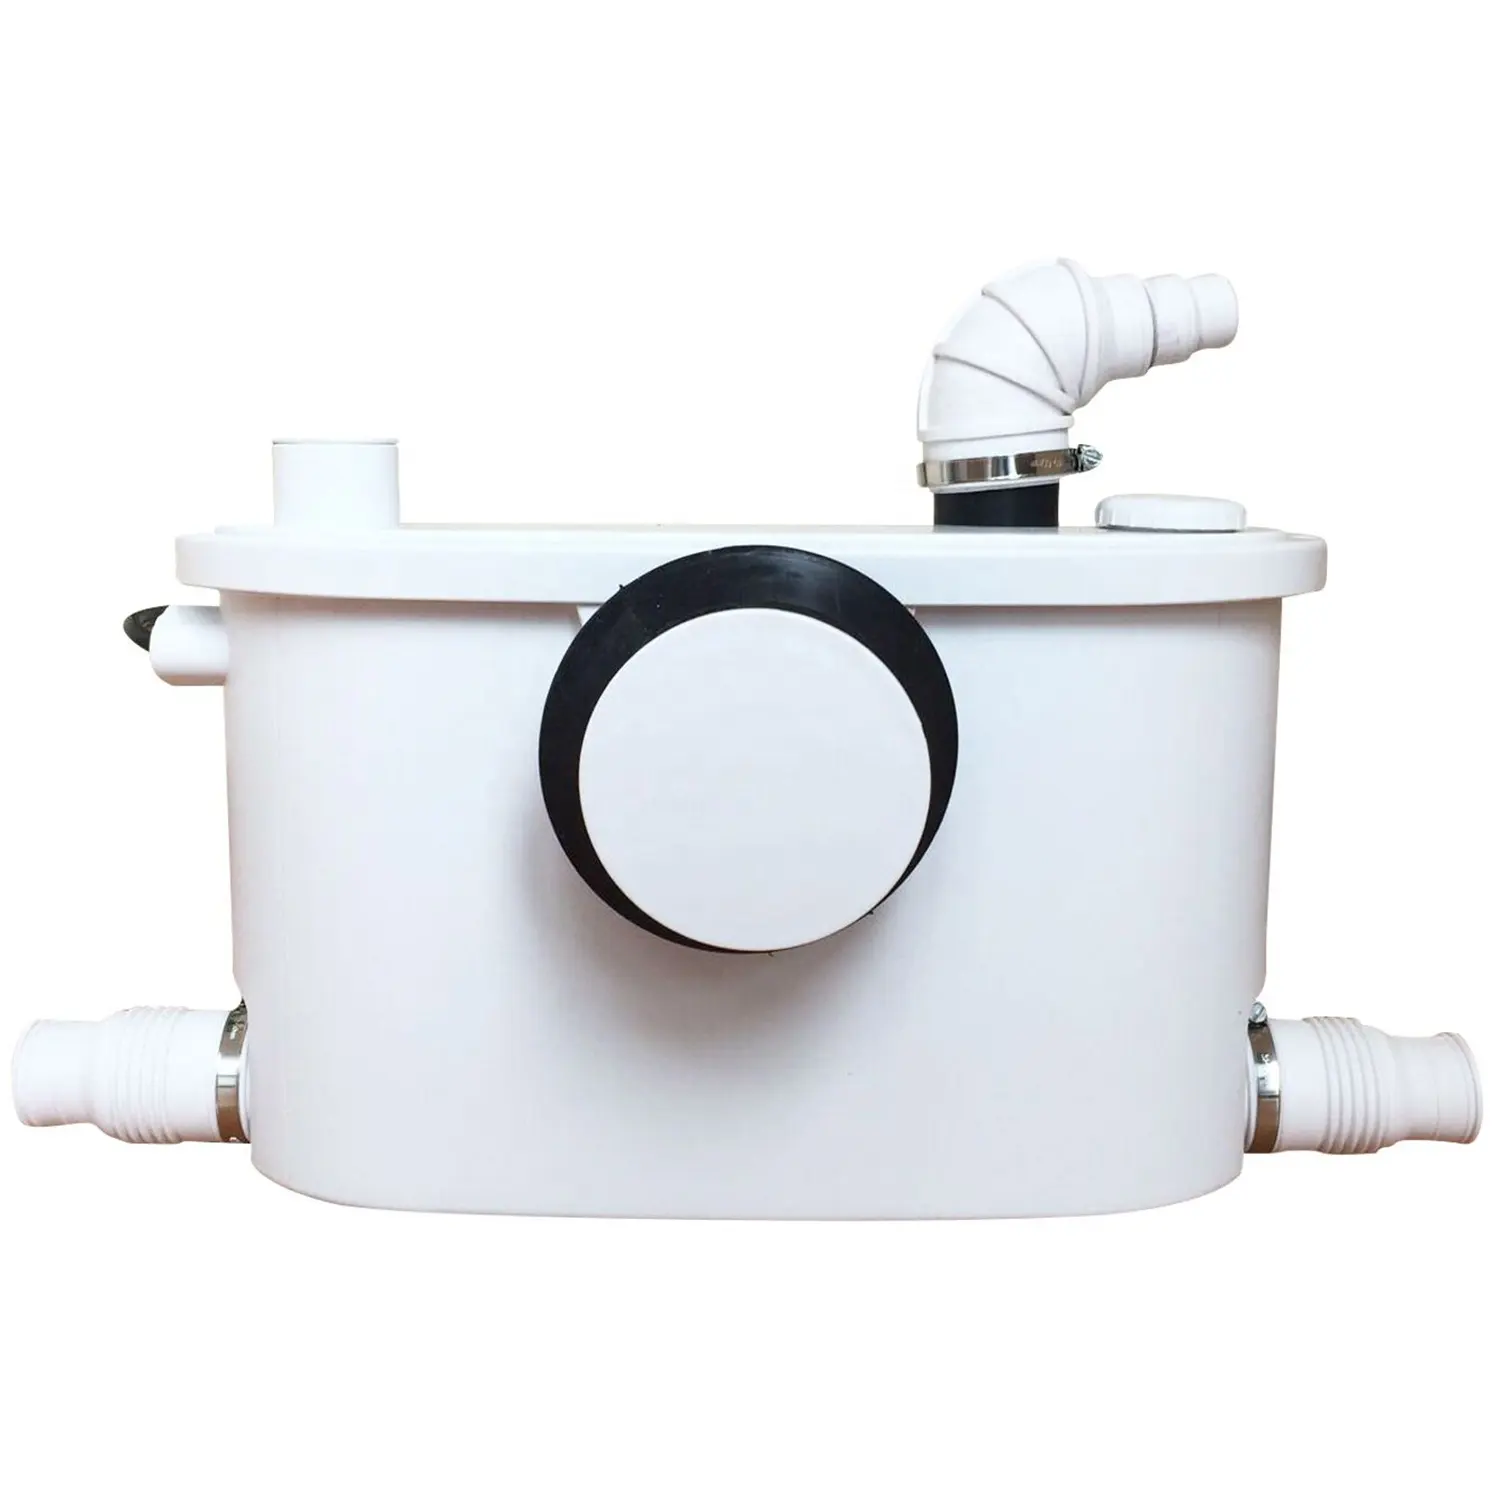 Sanimove 400w pompa maceratore sanitario bagno wc Macerator pompa per acque reflue maceratore pompe per toilette